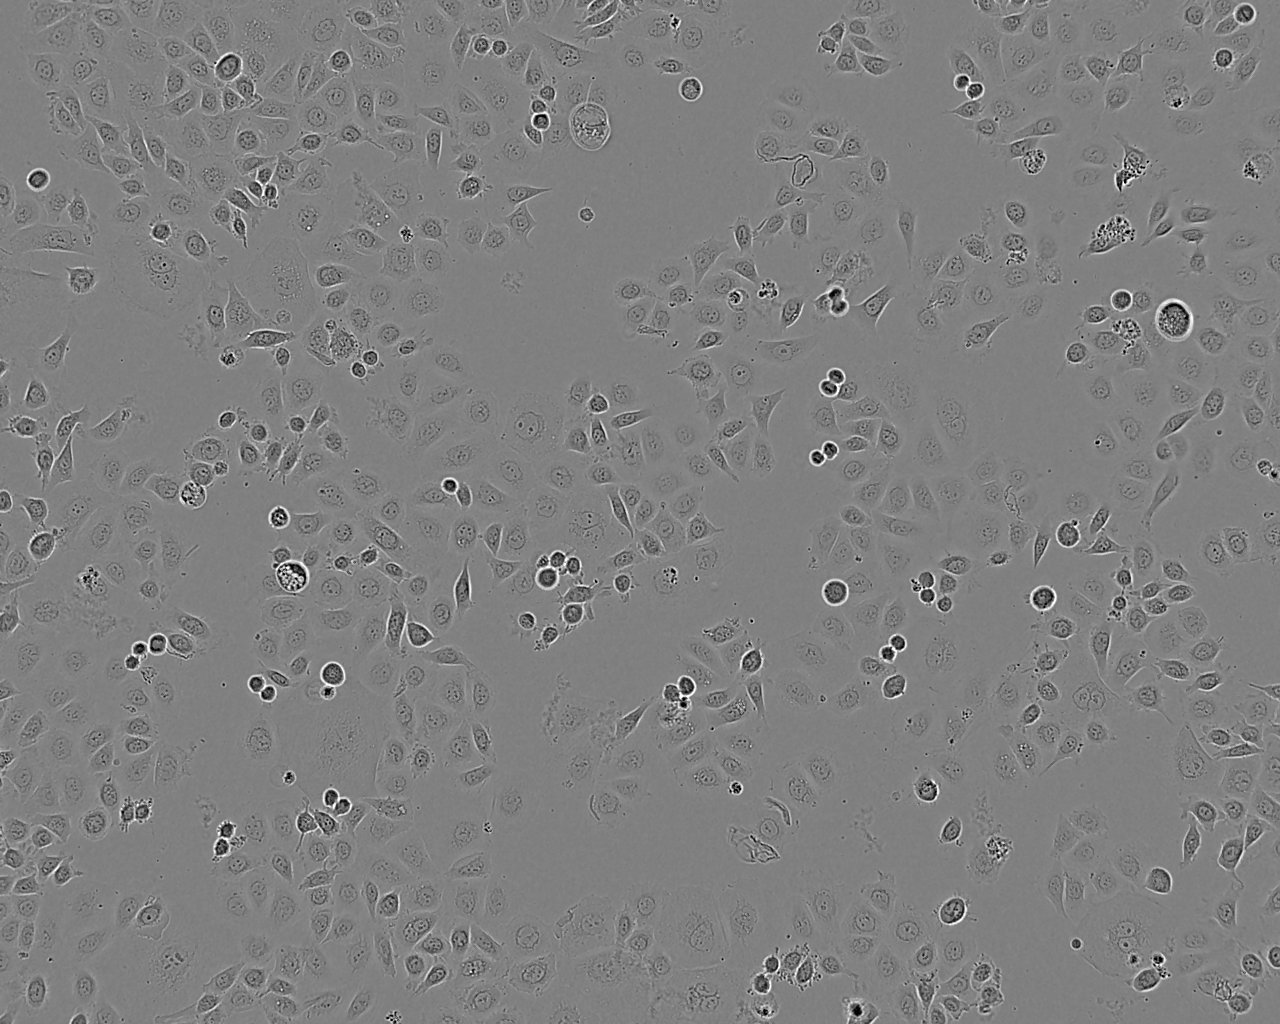 CV-1细胞：非洲绿猴肾细胞系